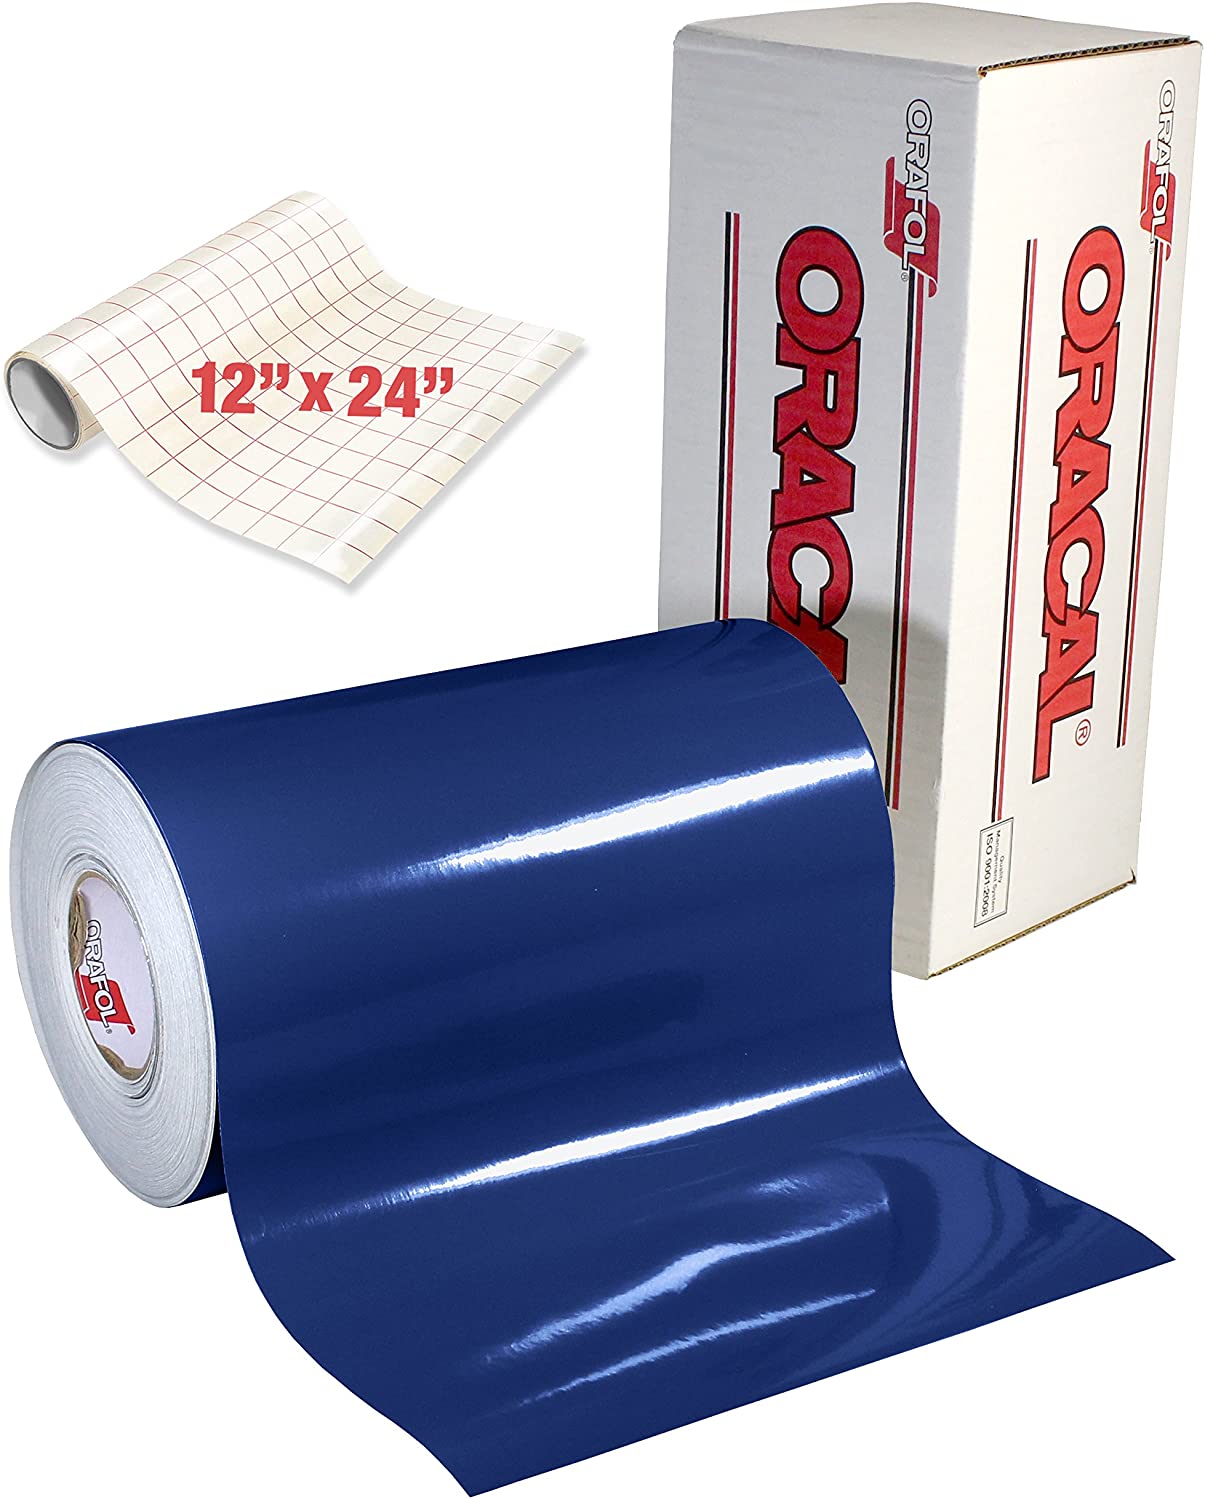 ORACAL 5400 Rollo de vinilo adhesivo reflectante azul de 12 x 24 pulgadas  para Silhouette, Cameo y Cricut, incluyendo rollo de papel de transferencia